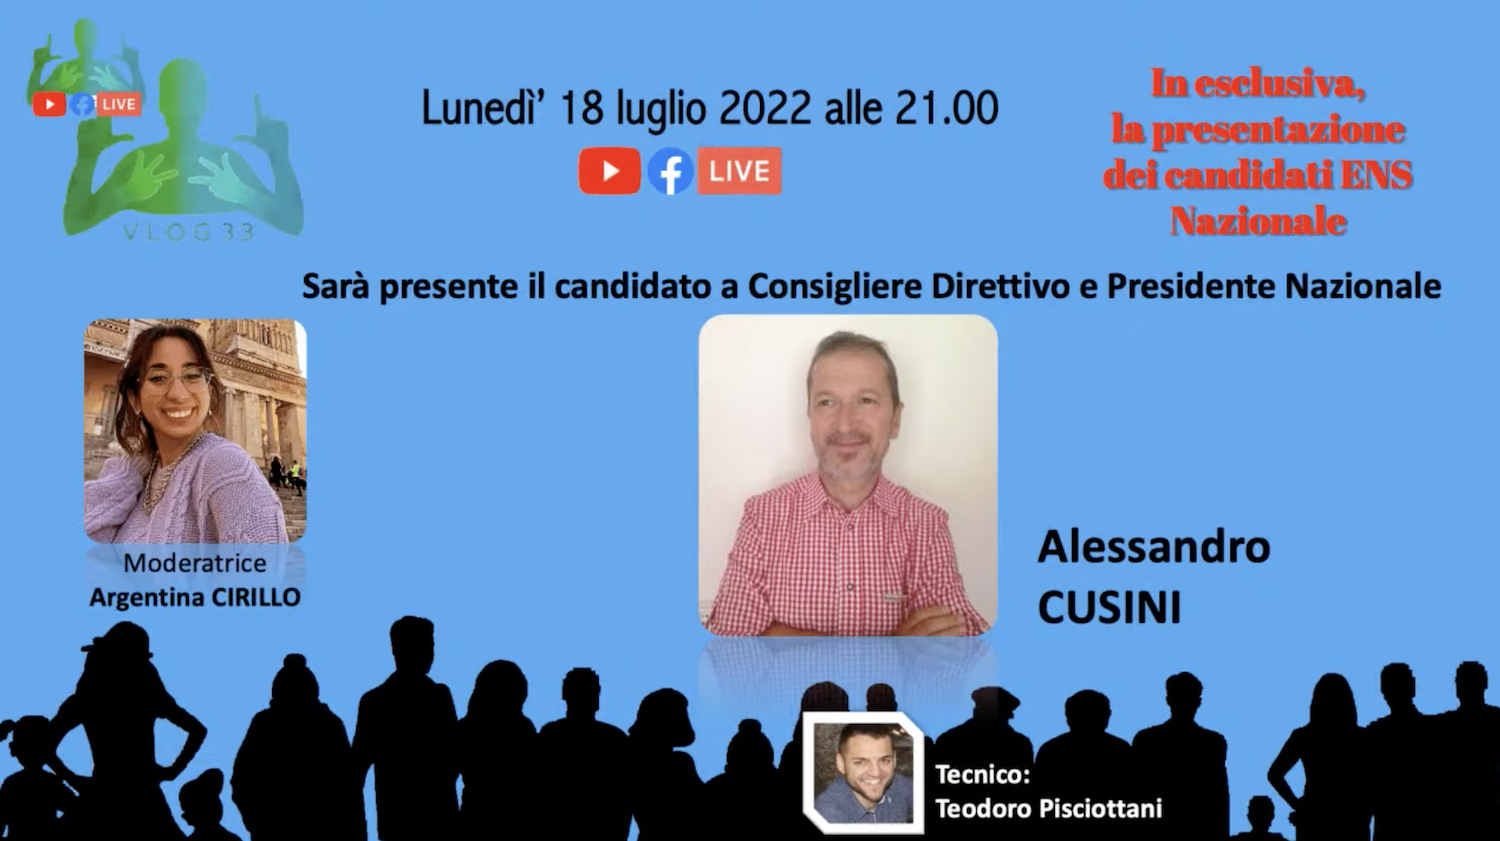 Presentazione del candidato a Consigliere Direttivo e Presidente Nazionale ENS Alessandro Cusini – 18 luglio 2022